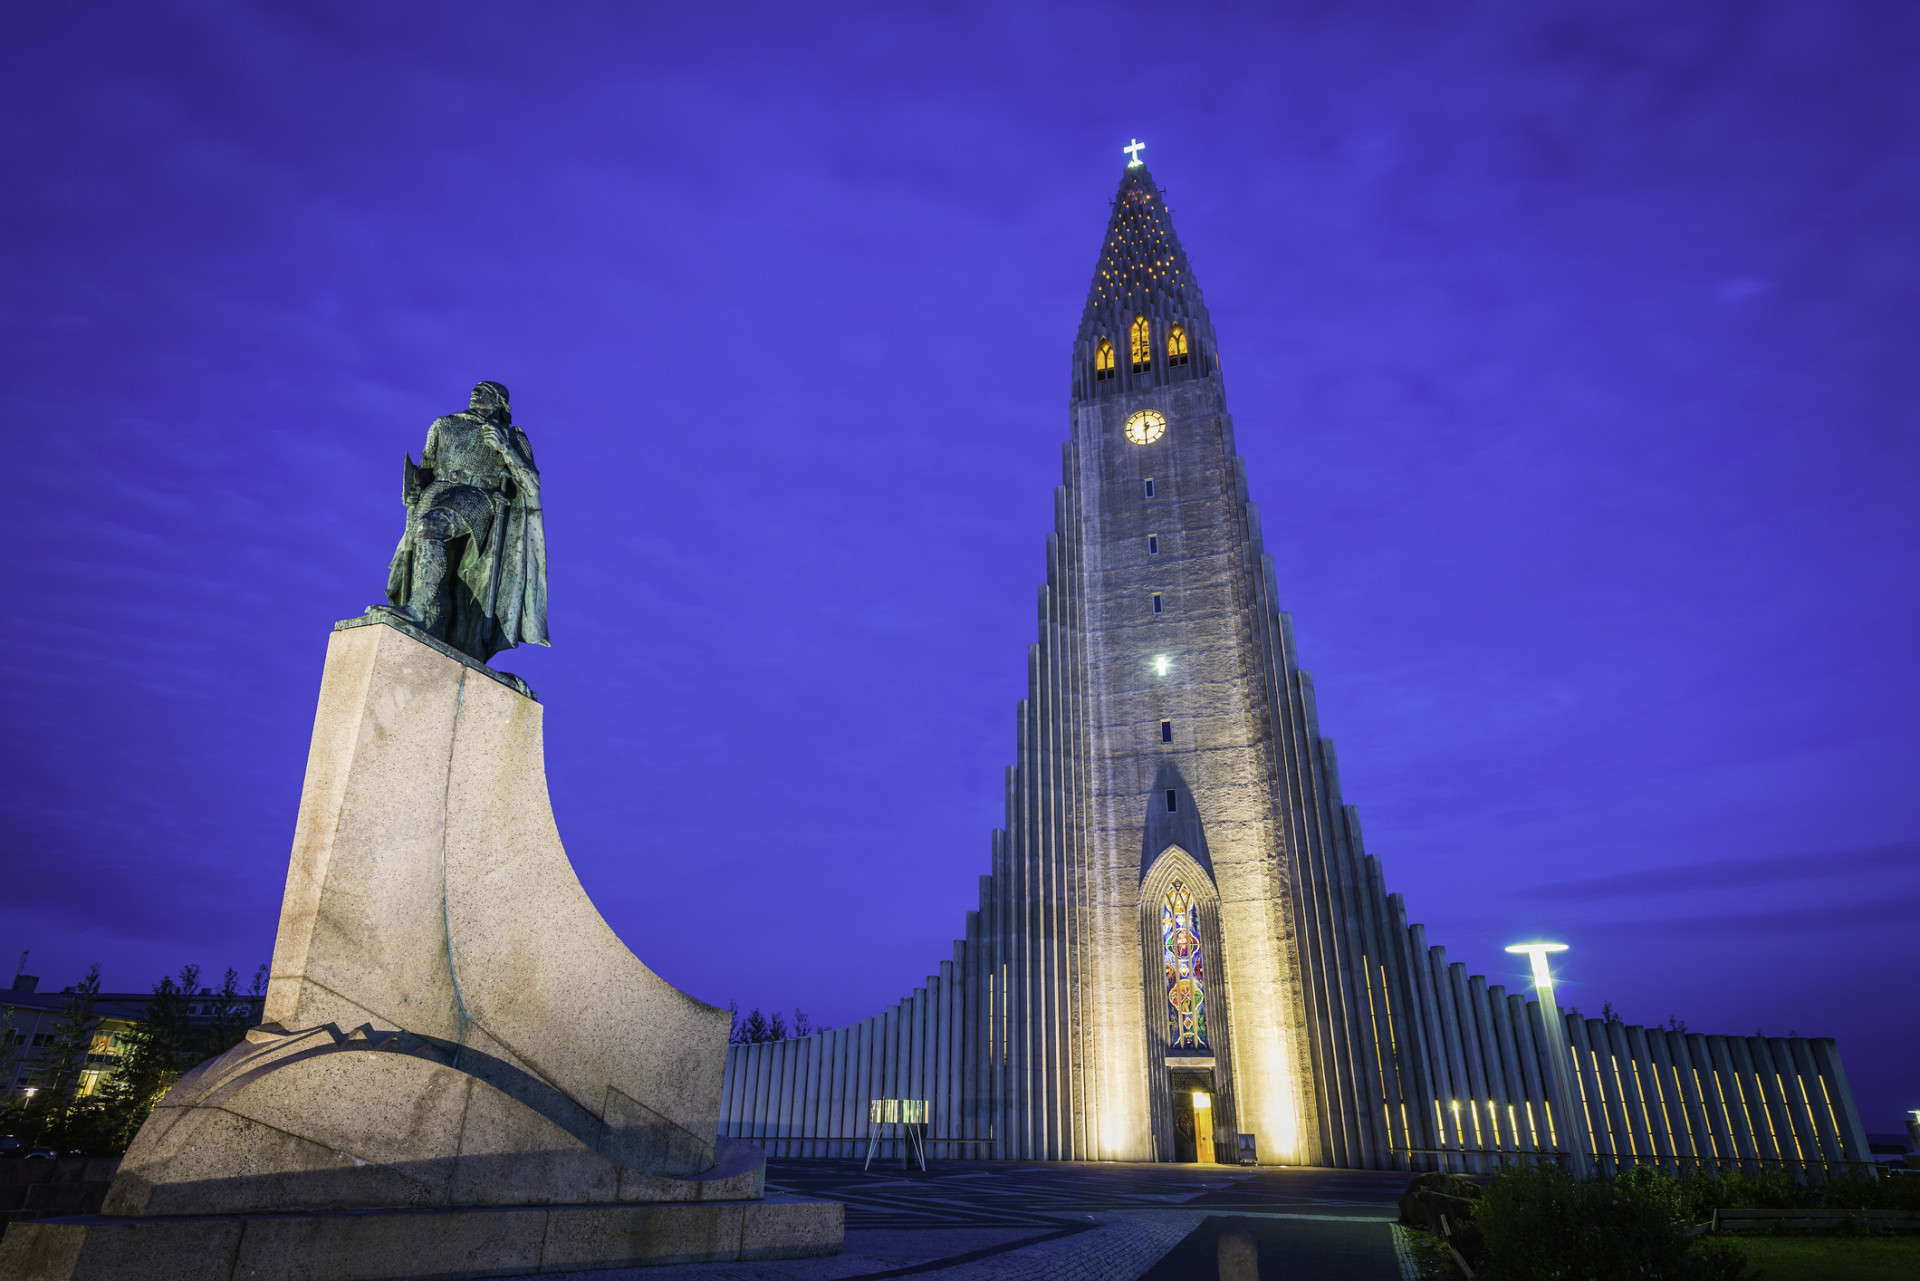 <p>Une statue de l'explorateur Leif Erikson (né vers 970 - décédé vers 1020), se tient illuminée face au cloché moderne et aux colonnes de béton de l'Hallgrimskirkja, la célèbre église luthérienne de la ville.</p><p>Tu pourrais aussi aimer: </p>